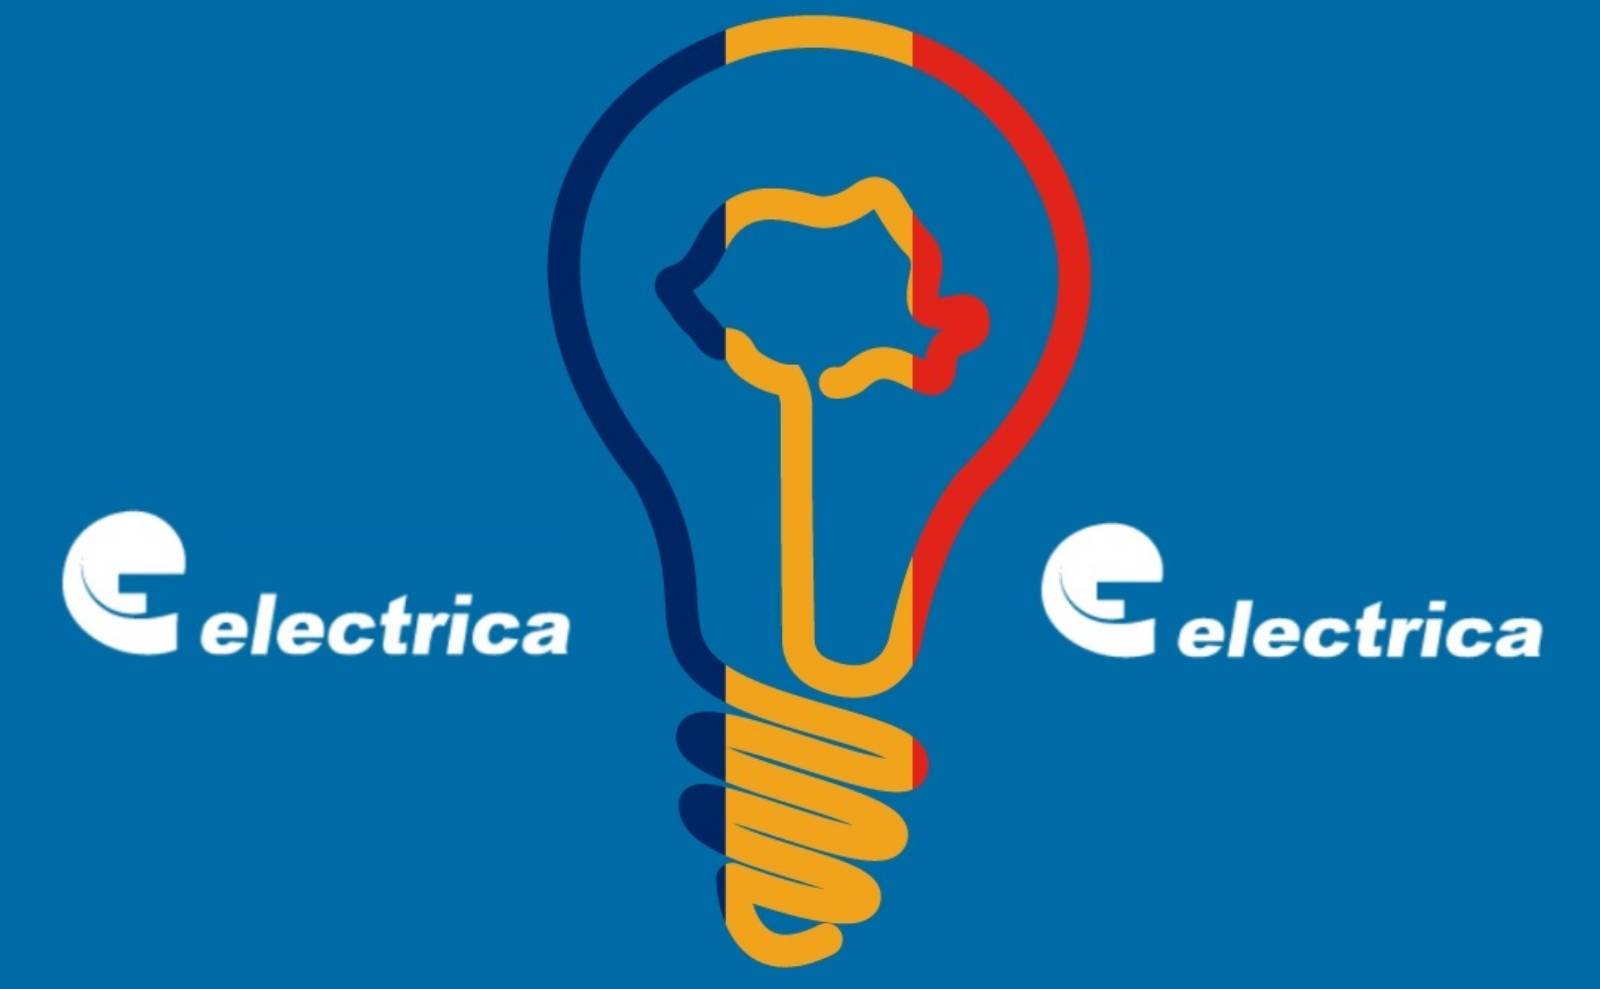 Electrica Nouvelles annonces officielles LAST MINUTE vise des MILLIONS de Roumains